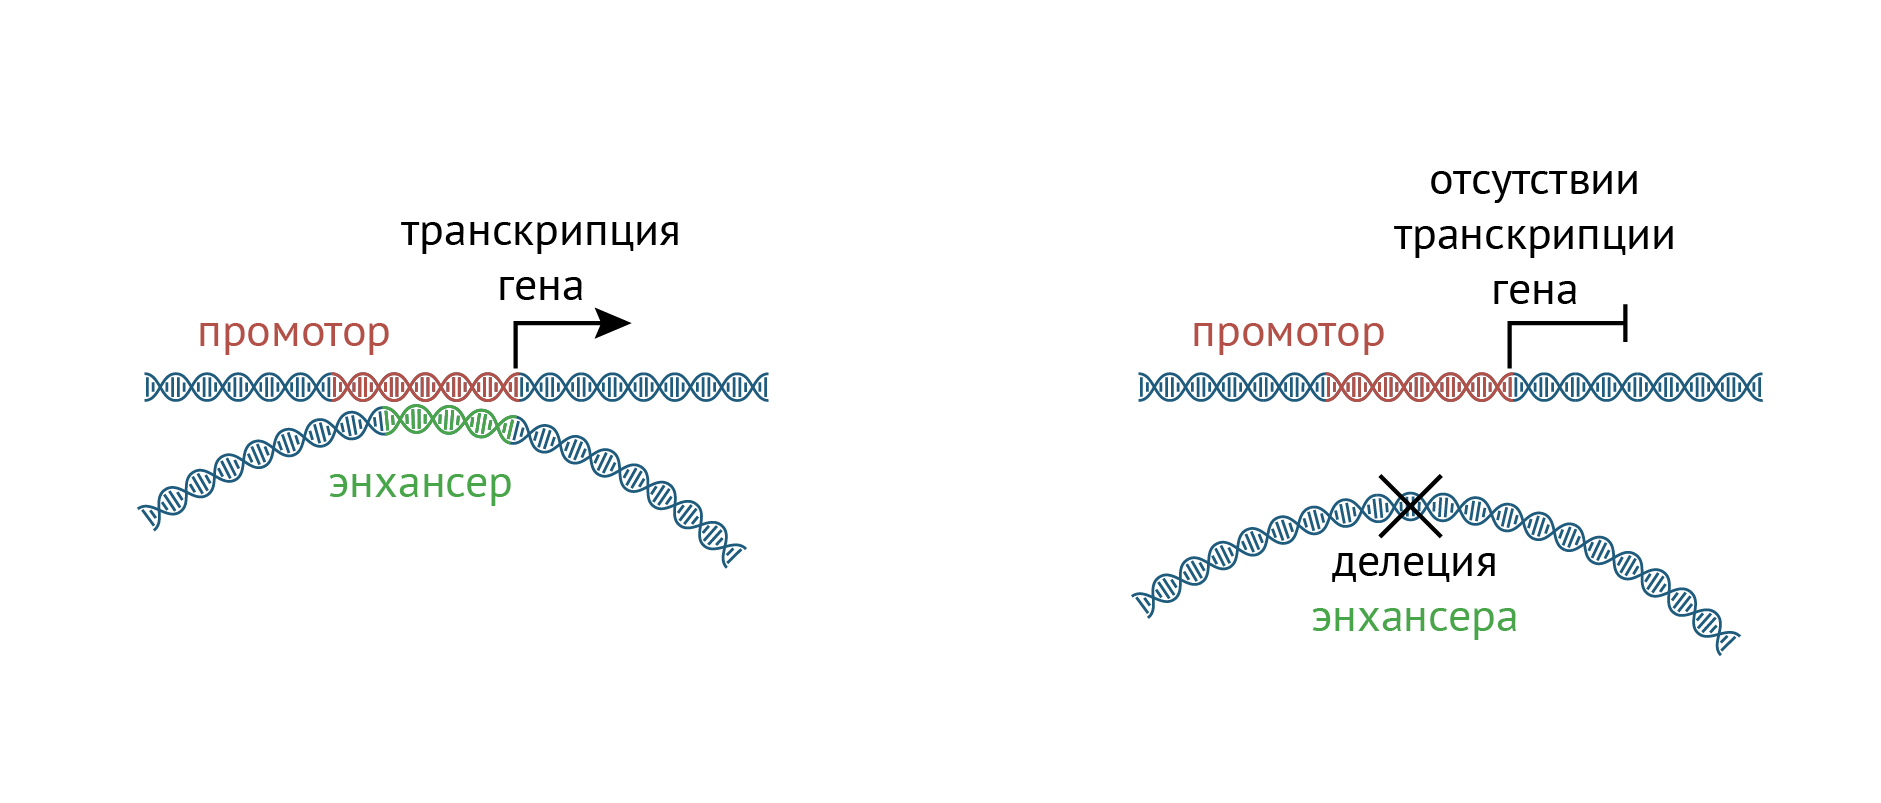 Как делеция энхансеров влияет на транскрипцию генов